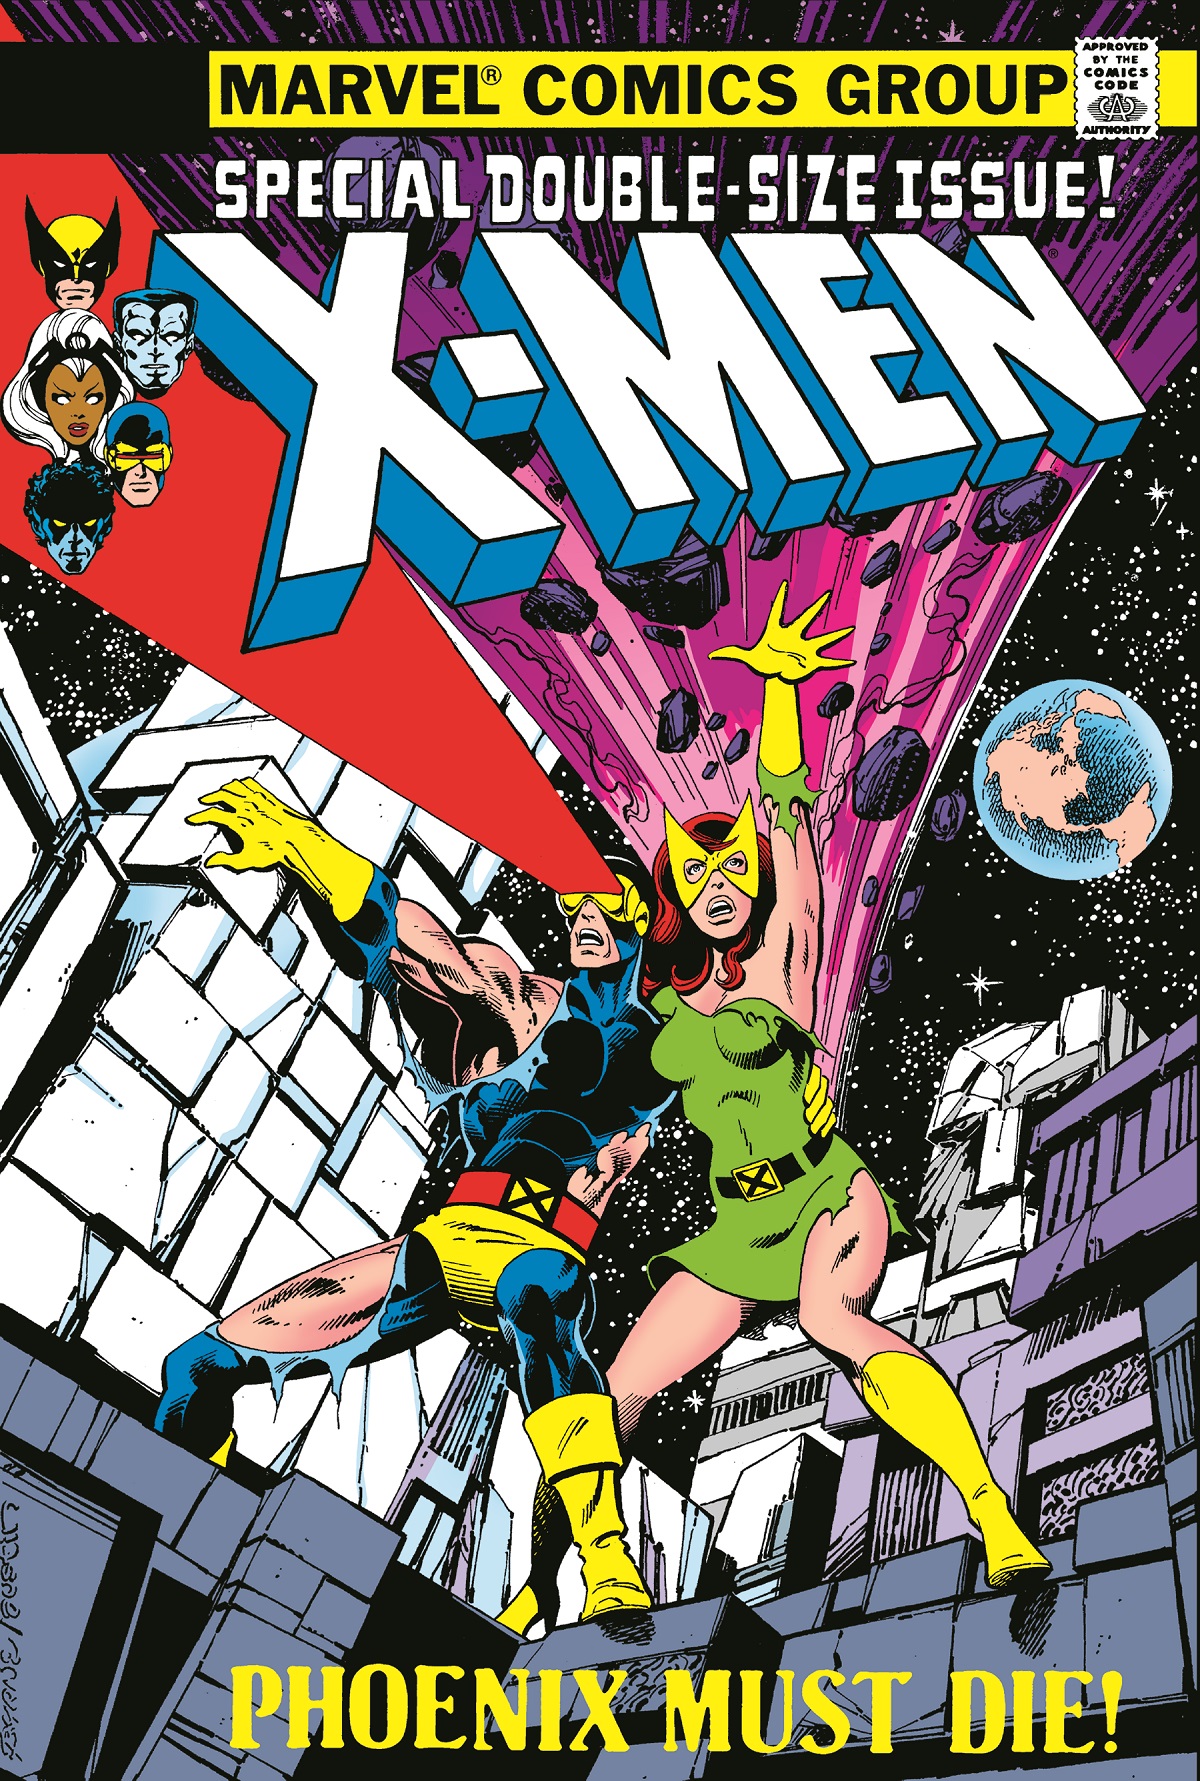 The Uncanny X-Men Omnibus Vol. 2 (Hardcover)